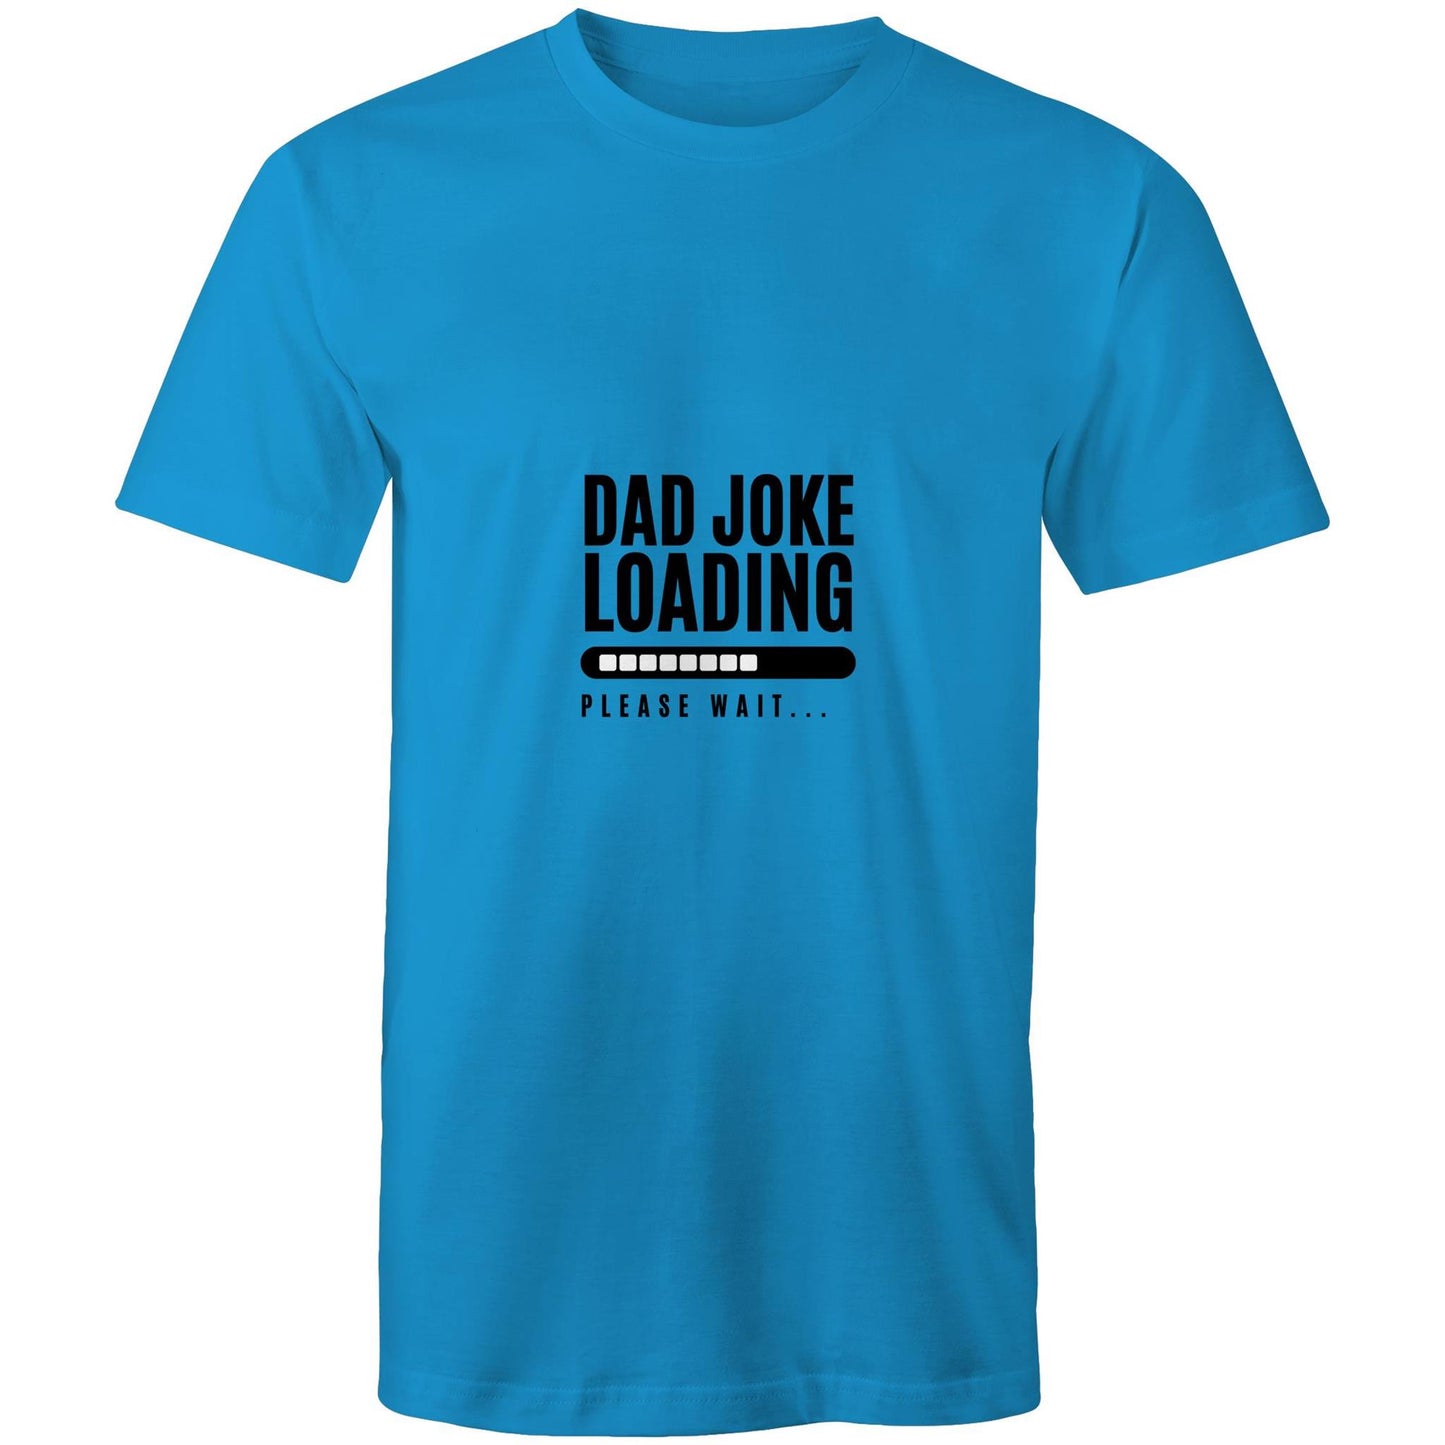 Dad Joke Loading, Please Wait - Mens T-Shirt